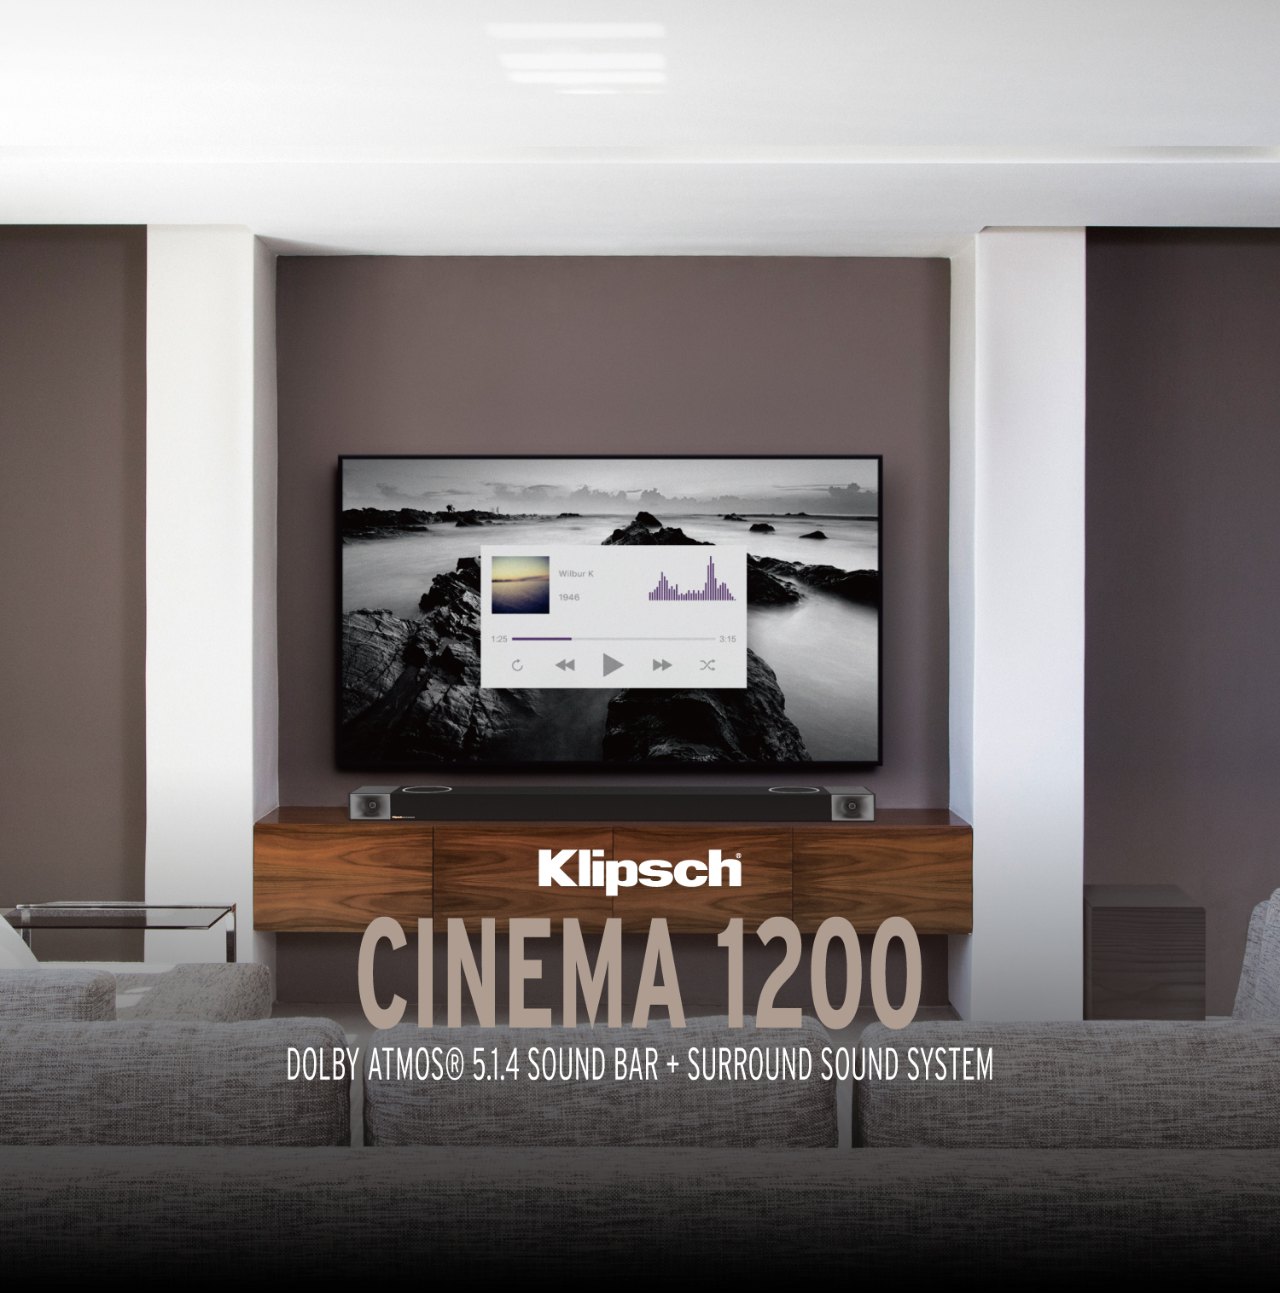 Klipsch Cinema 1200